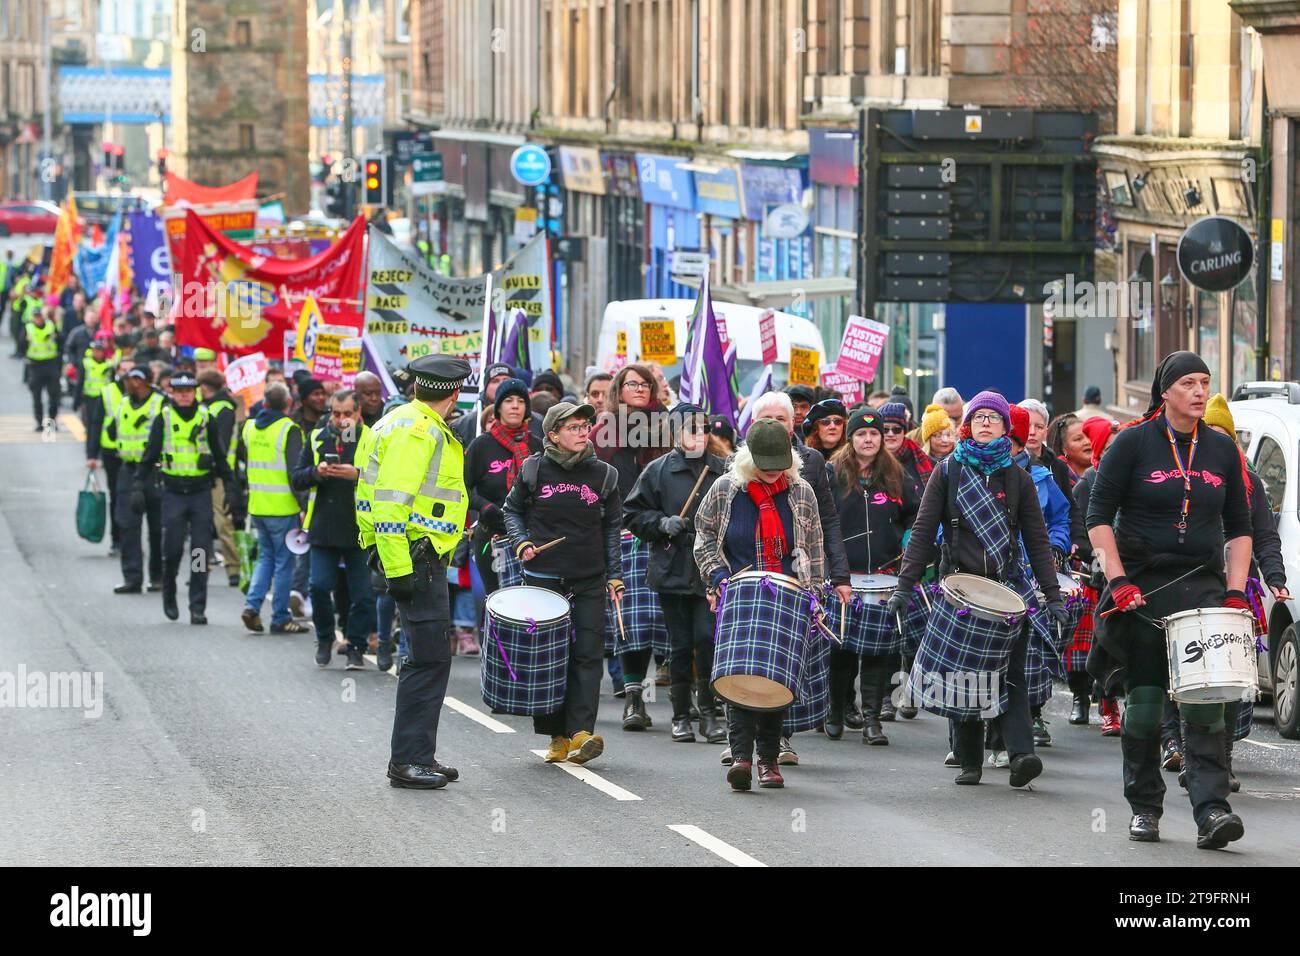 23 novembre 25. Glasgow, Regno Unito. La parata annuale del St Andrew's Day Parade dello Scottish Trades Union Congress (STUC) si svolse attraverso il centro di Glasgow con una collezione di diversi gruppi politici, socialisti e di sinistra. La sfilata, per consuetudine, si tiene ogni anno l'ultimo sabato di novembre. ANAS SARWAR, MSP, leader del Partito laburista scozzese prese parte e guidò la parata. Crediti: Findlay/Alamy Live News Foto Stock